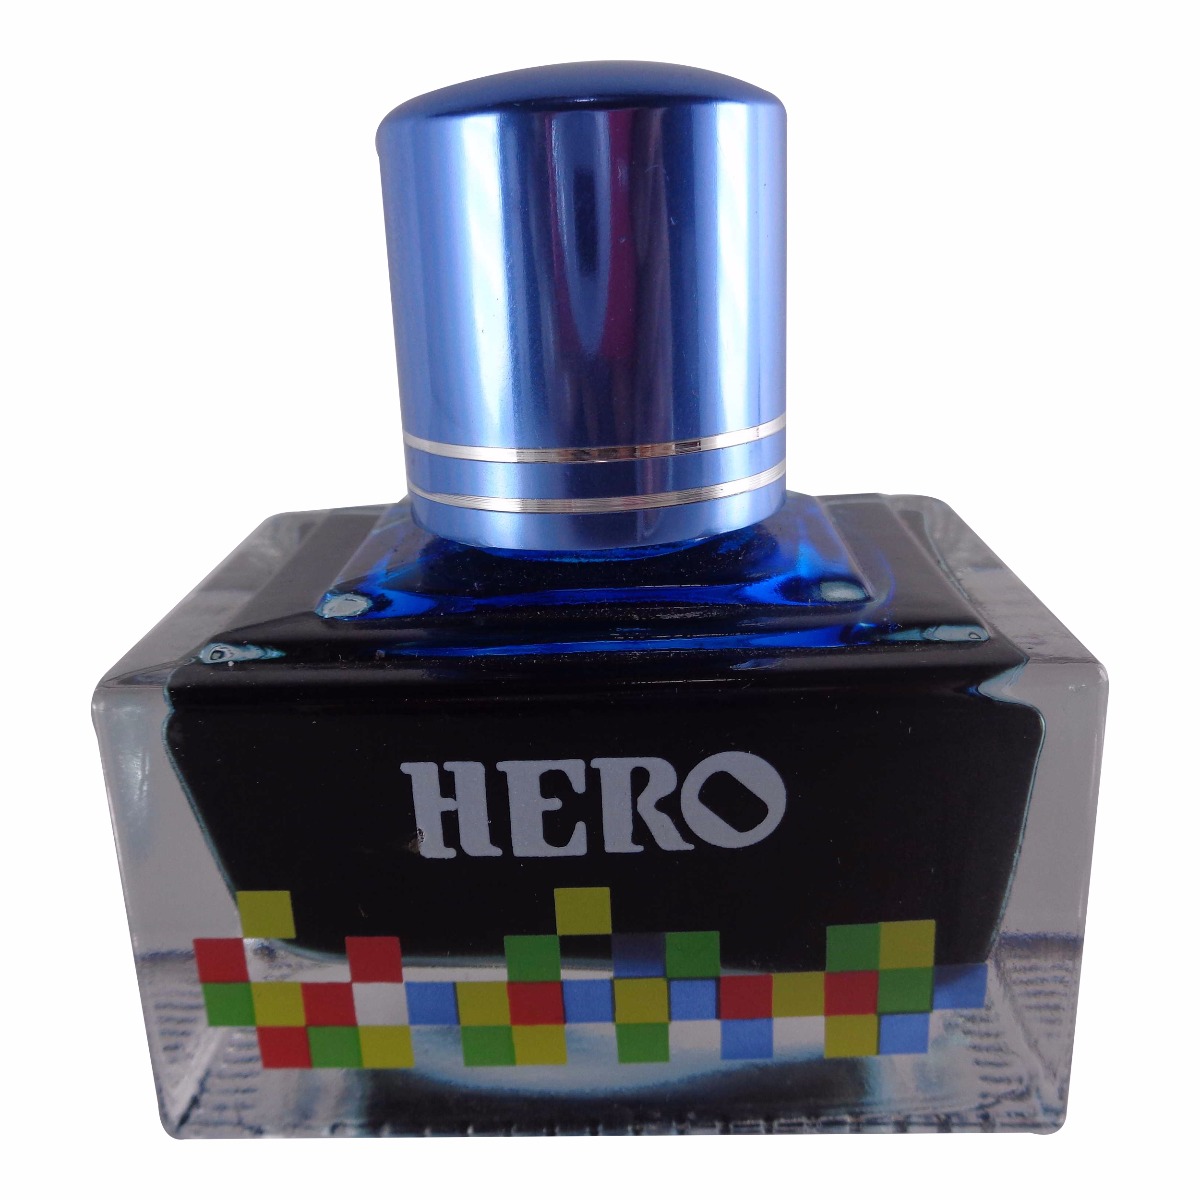 Hero No. 7106  Model: 70033 Extra color ink  Sky Blue color ink bottle